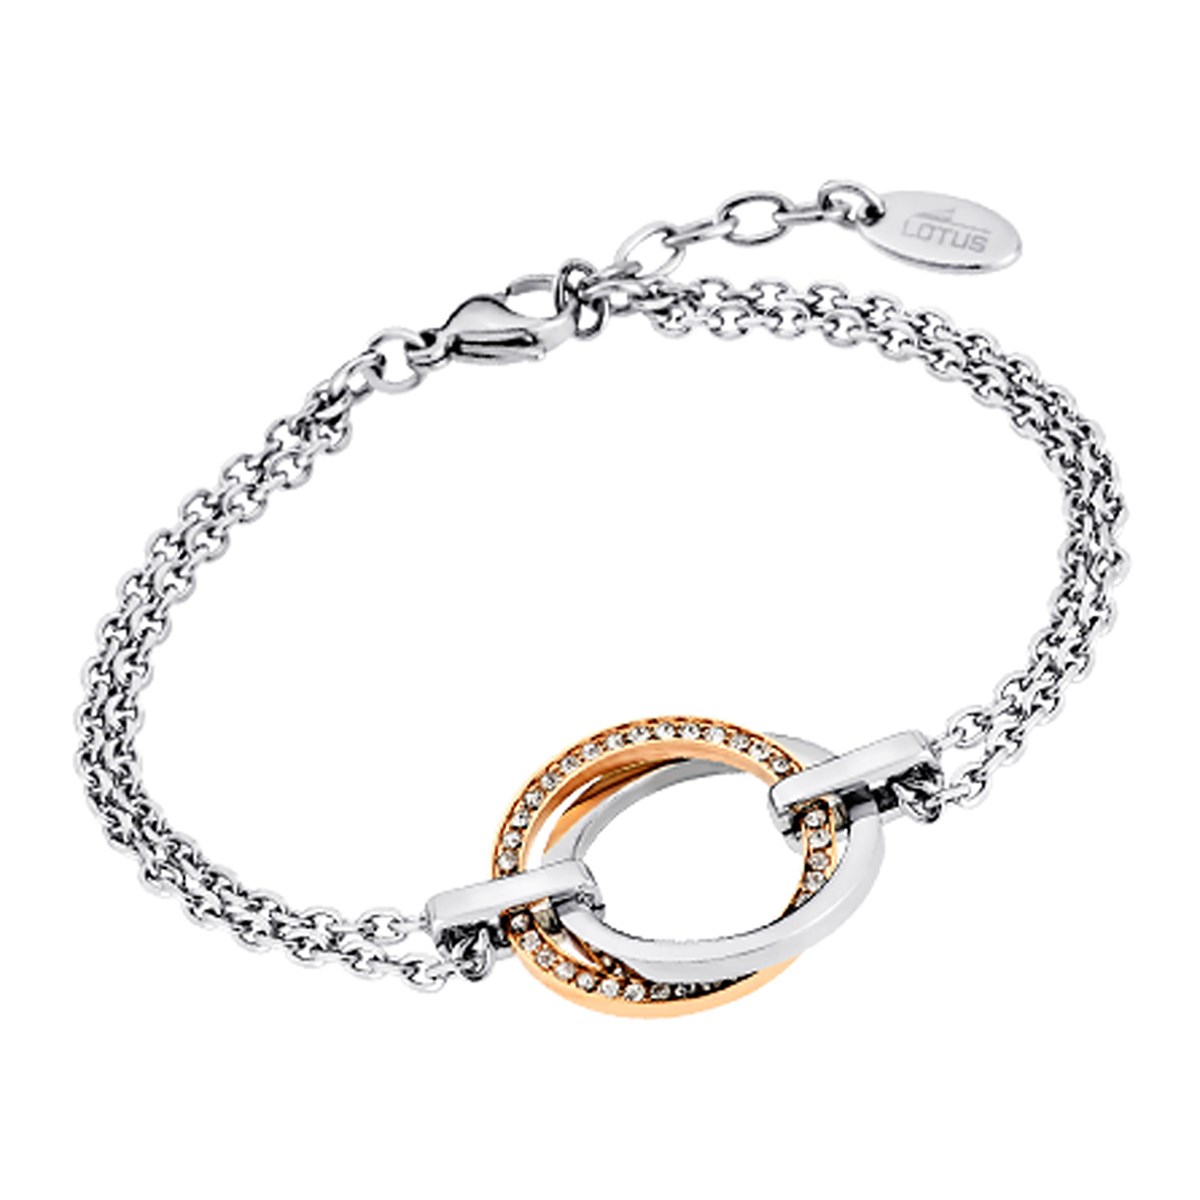 Bracelet Lotus Colelction Urban Woman double
anneaux